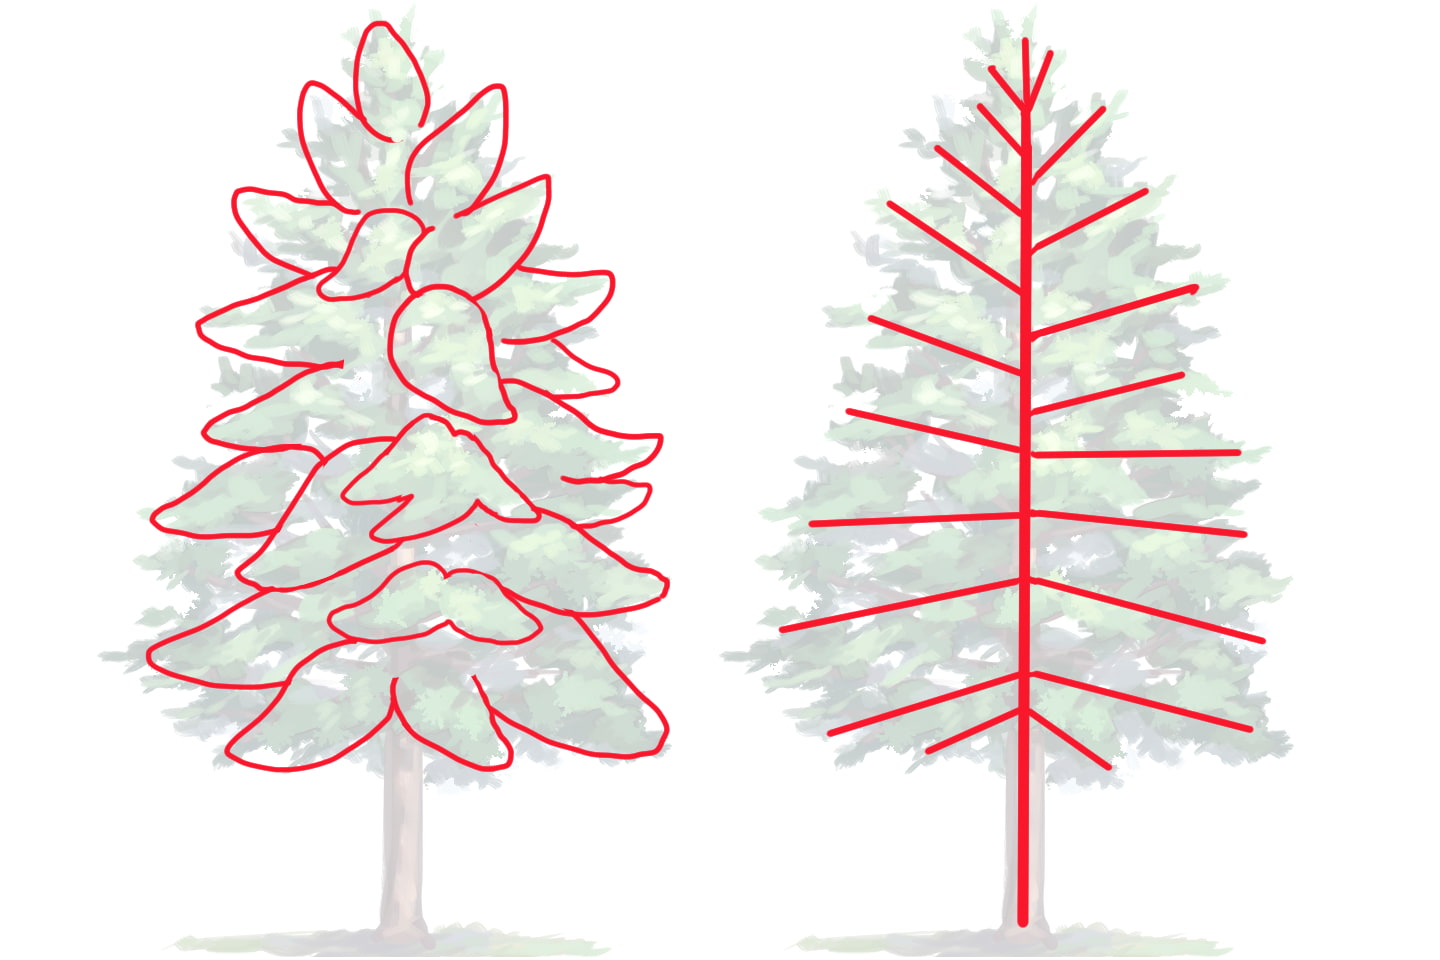 針葉樹の葉の構造説明